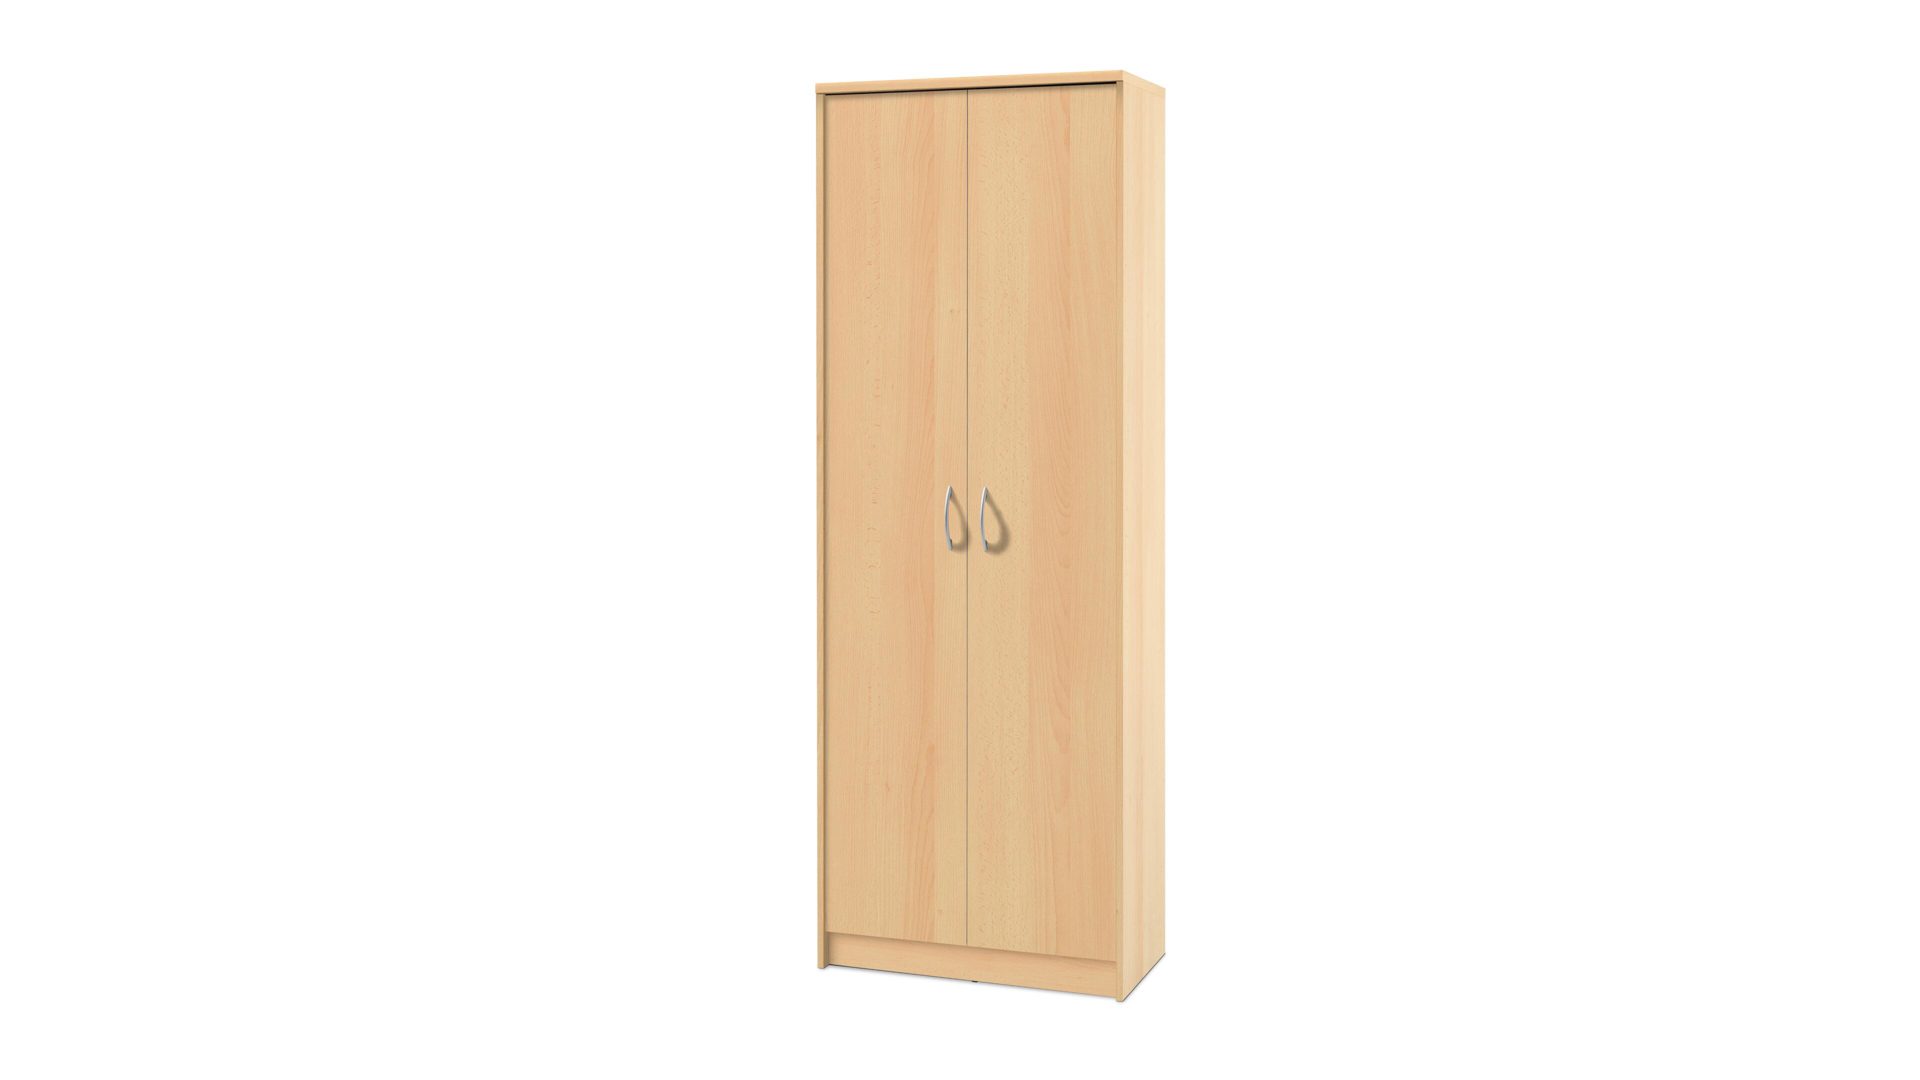 Aktenschrank Bega consult aus Holz in Holzfarben Aktenschrank buchefarbene Kunststoffoberflächen – zwei Türen, Höhe ca. 198 cm